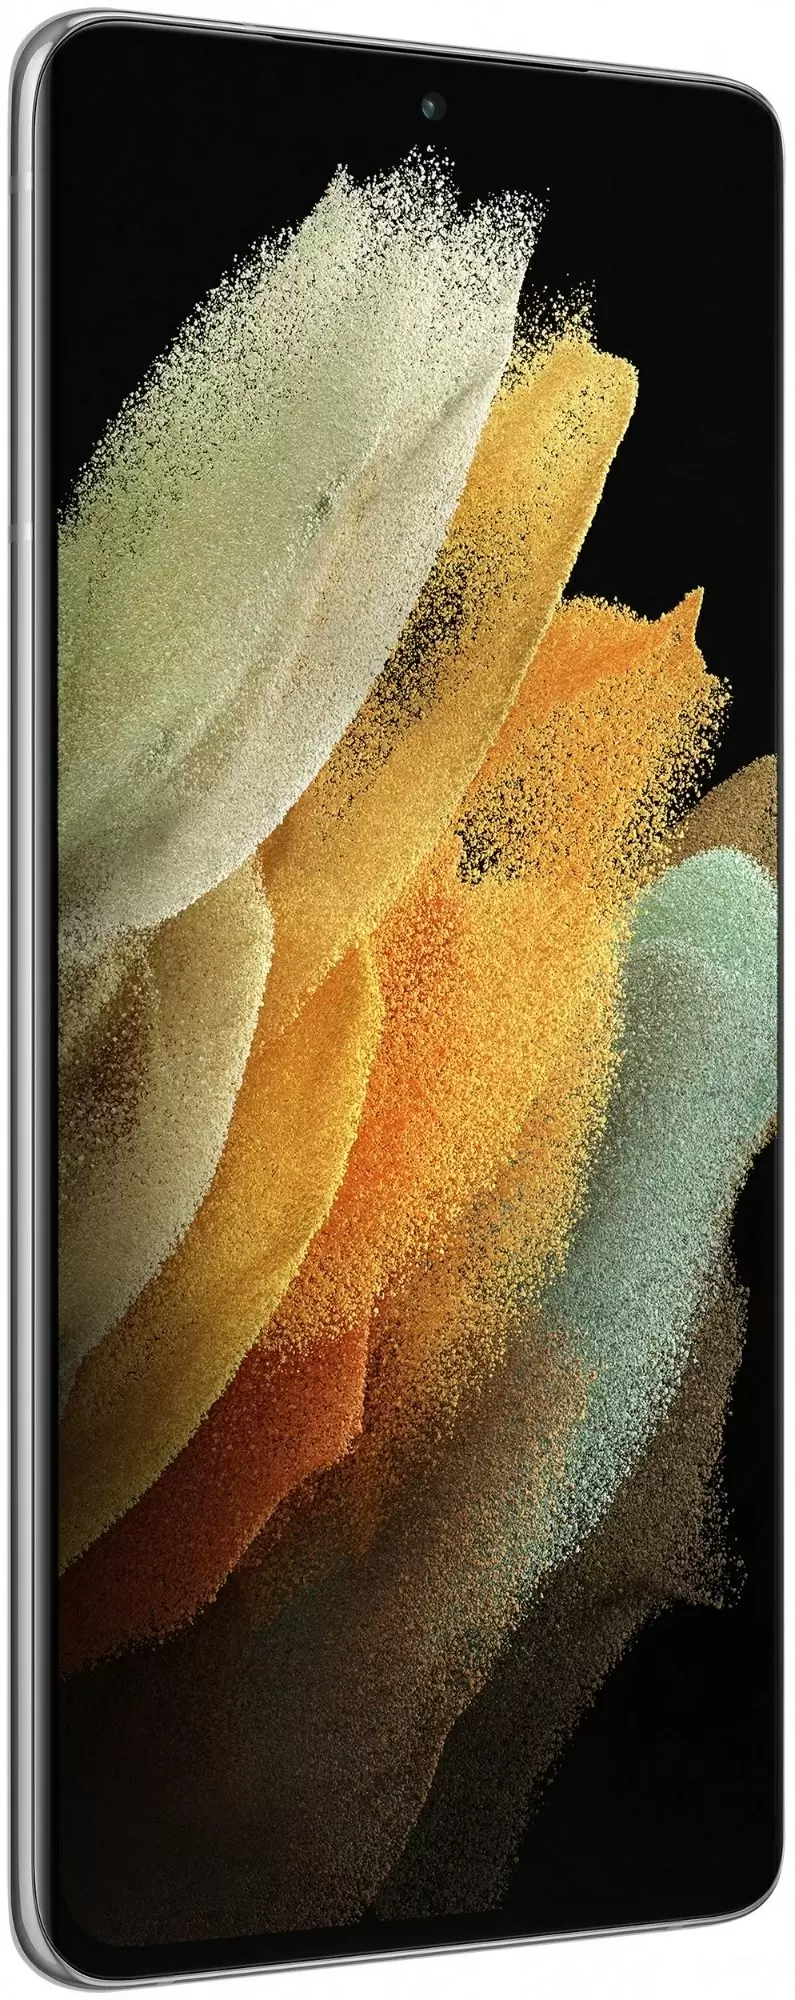 Смартфон Samsung SM-G998 Galaxy S21 Ultra 128GB, серебристый фантом